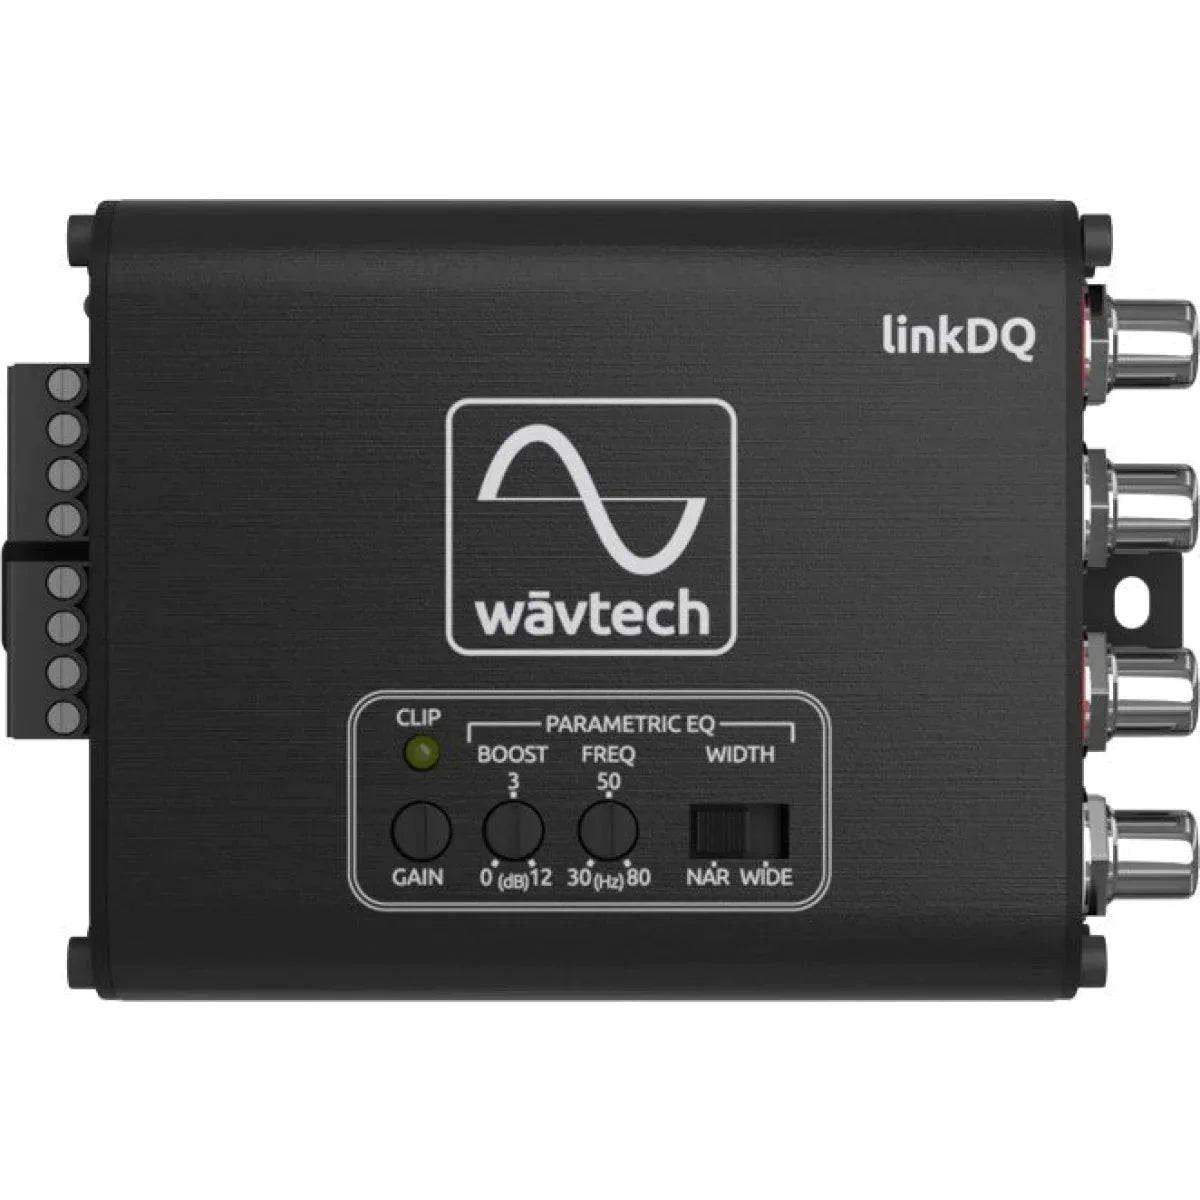 WAVTECH Wavtech linkDQHigh-Low Adapter High-Low Adapter